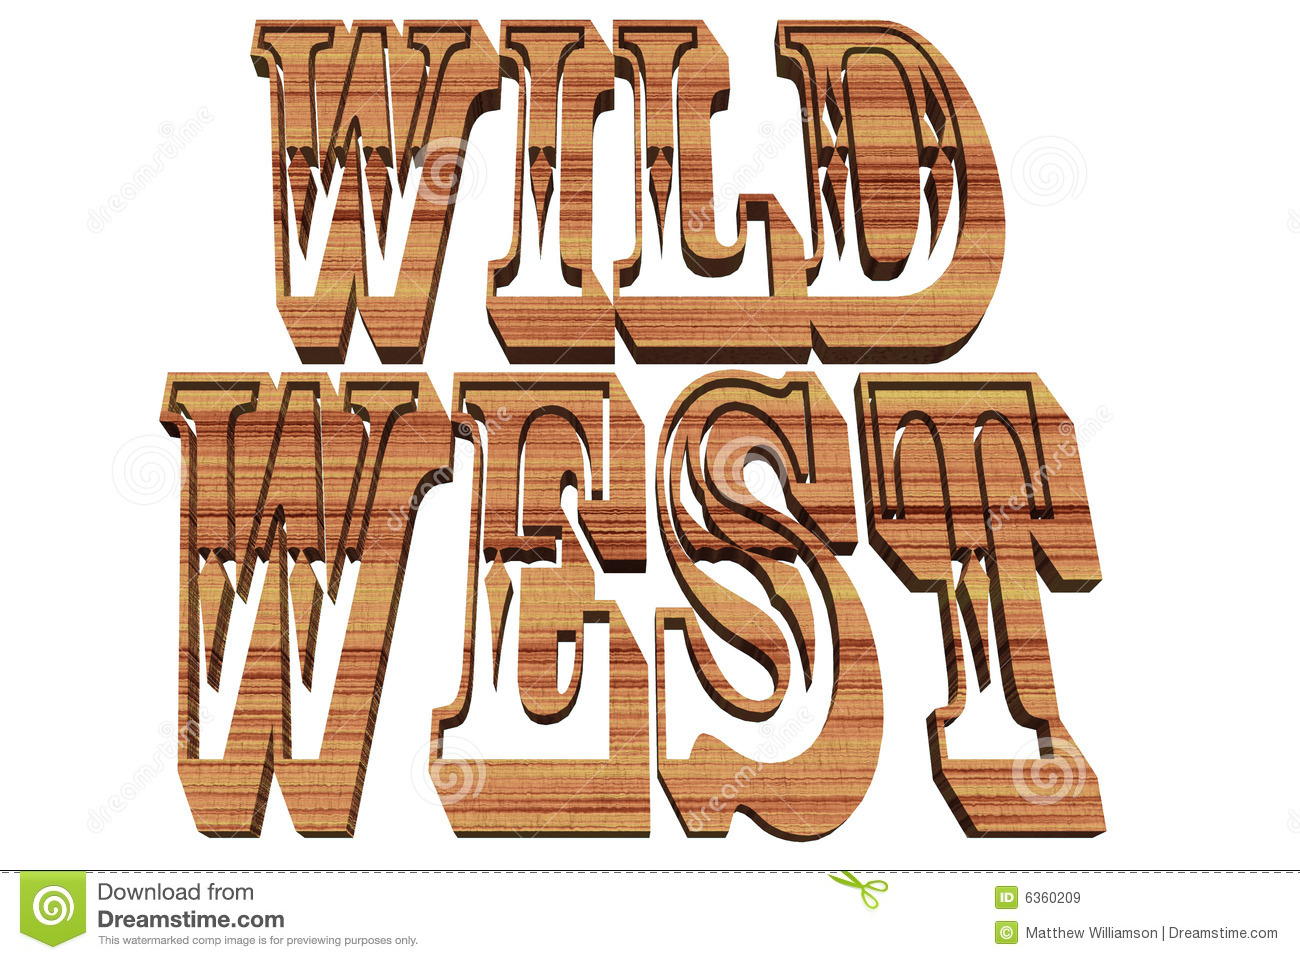 Wild West clip art and digita